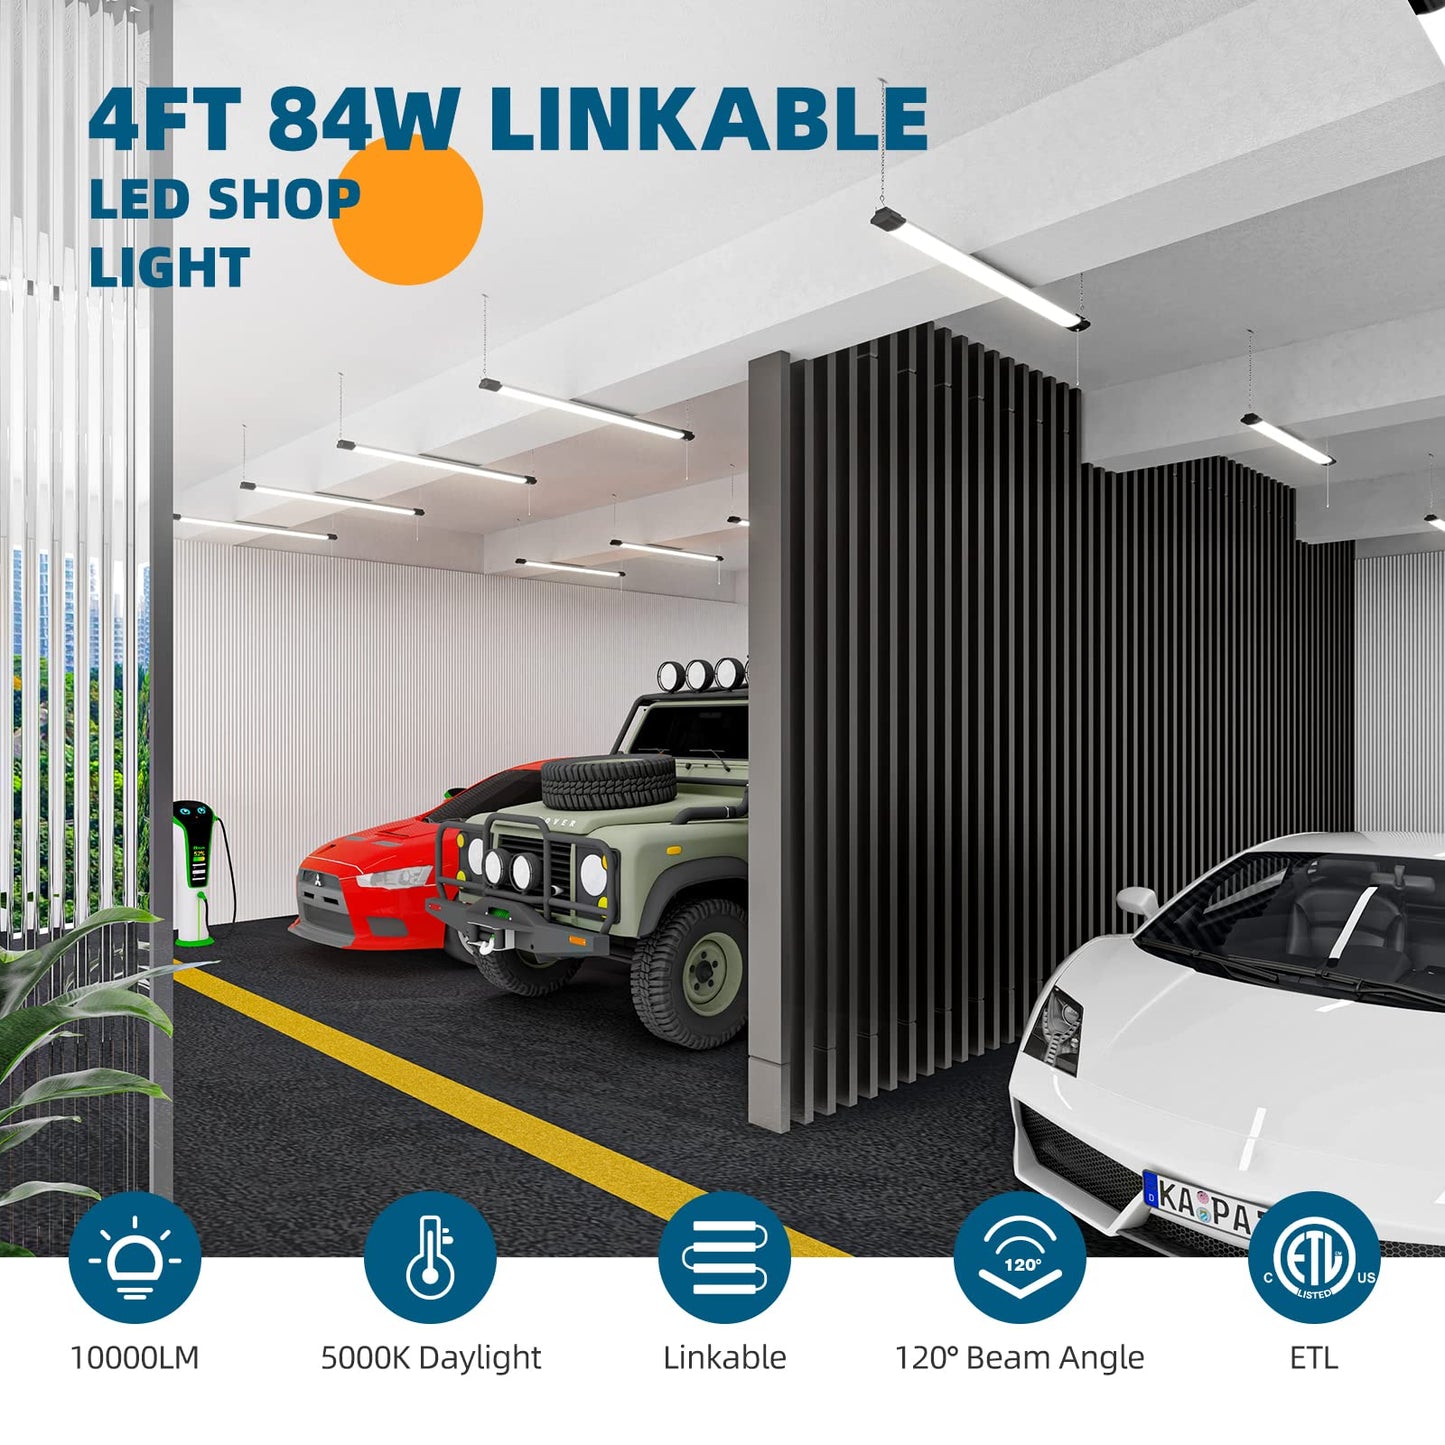 Barrina LED Shop Light for Garage, 10000LM, 84W, 4FT, 5000K Linkable Light Fixture for Workshop, Basement, Hanging or FlushMount, Heat Dissipation,